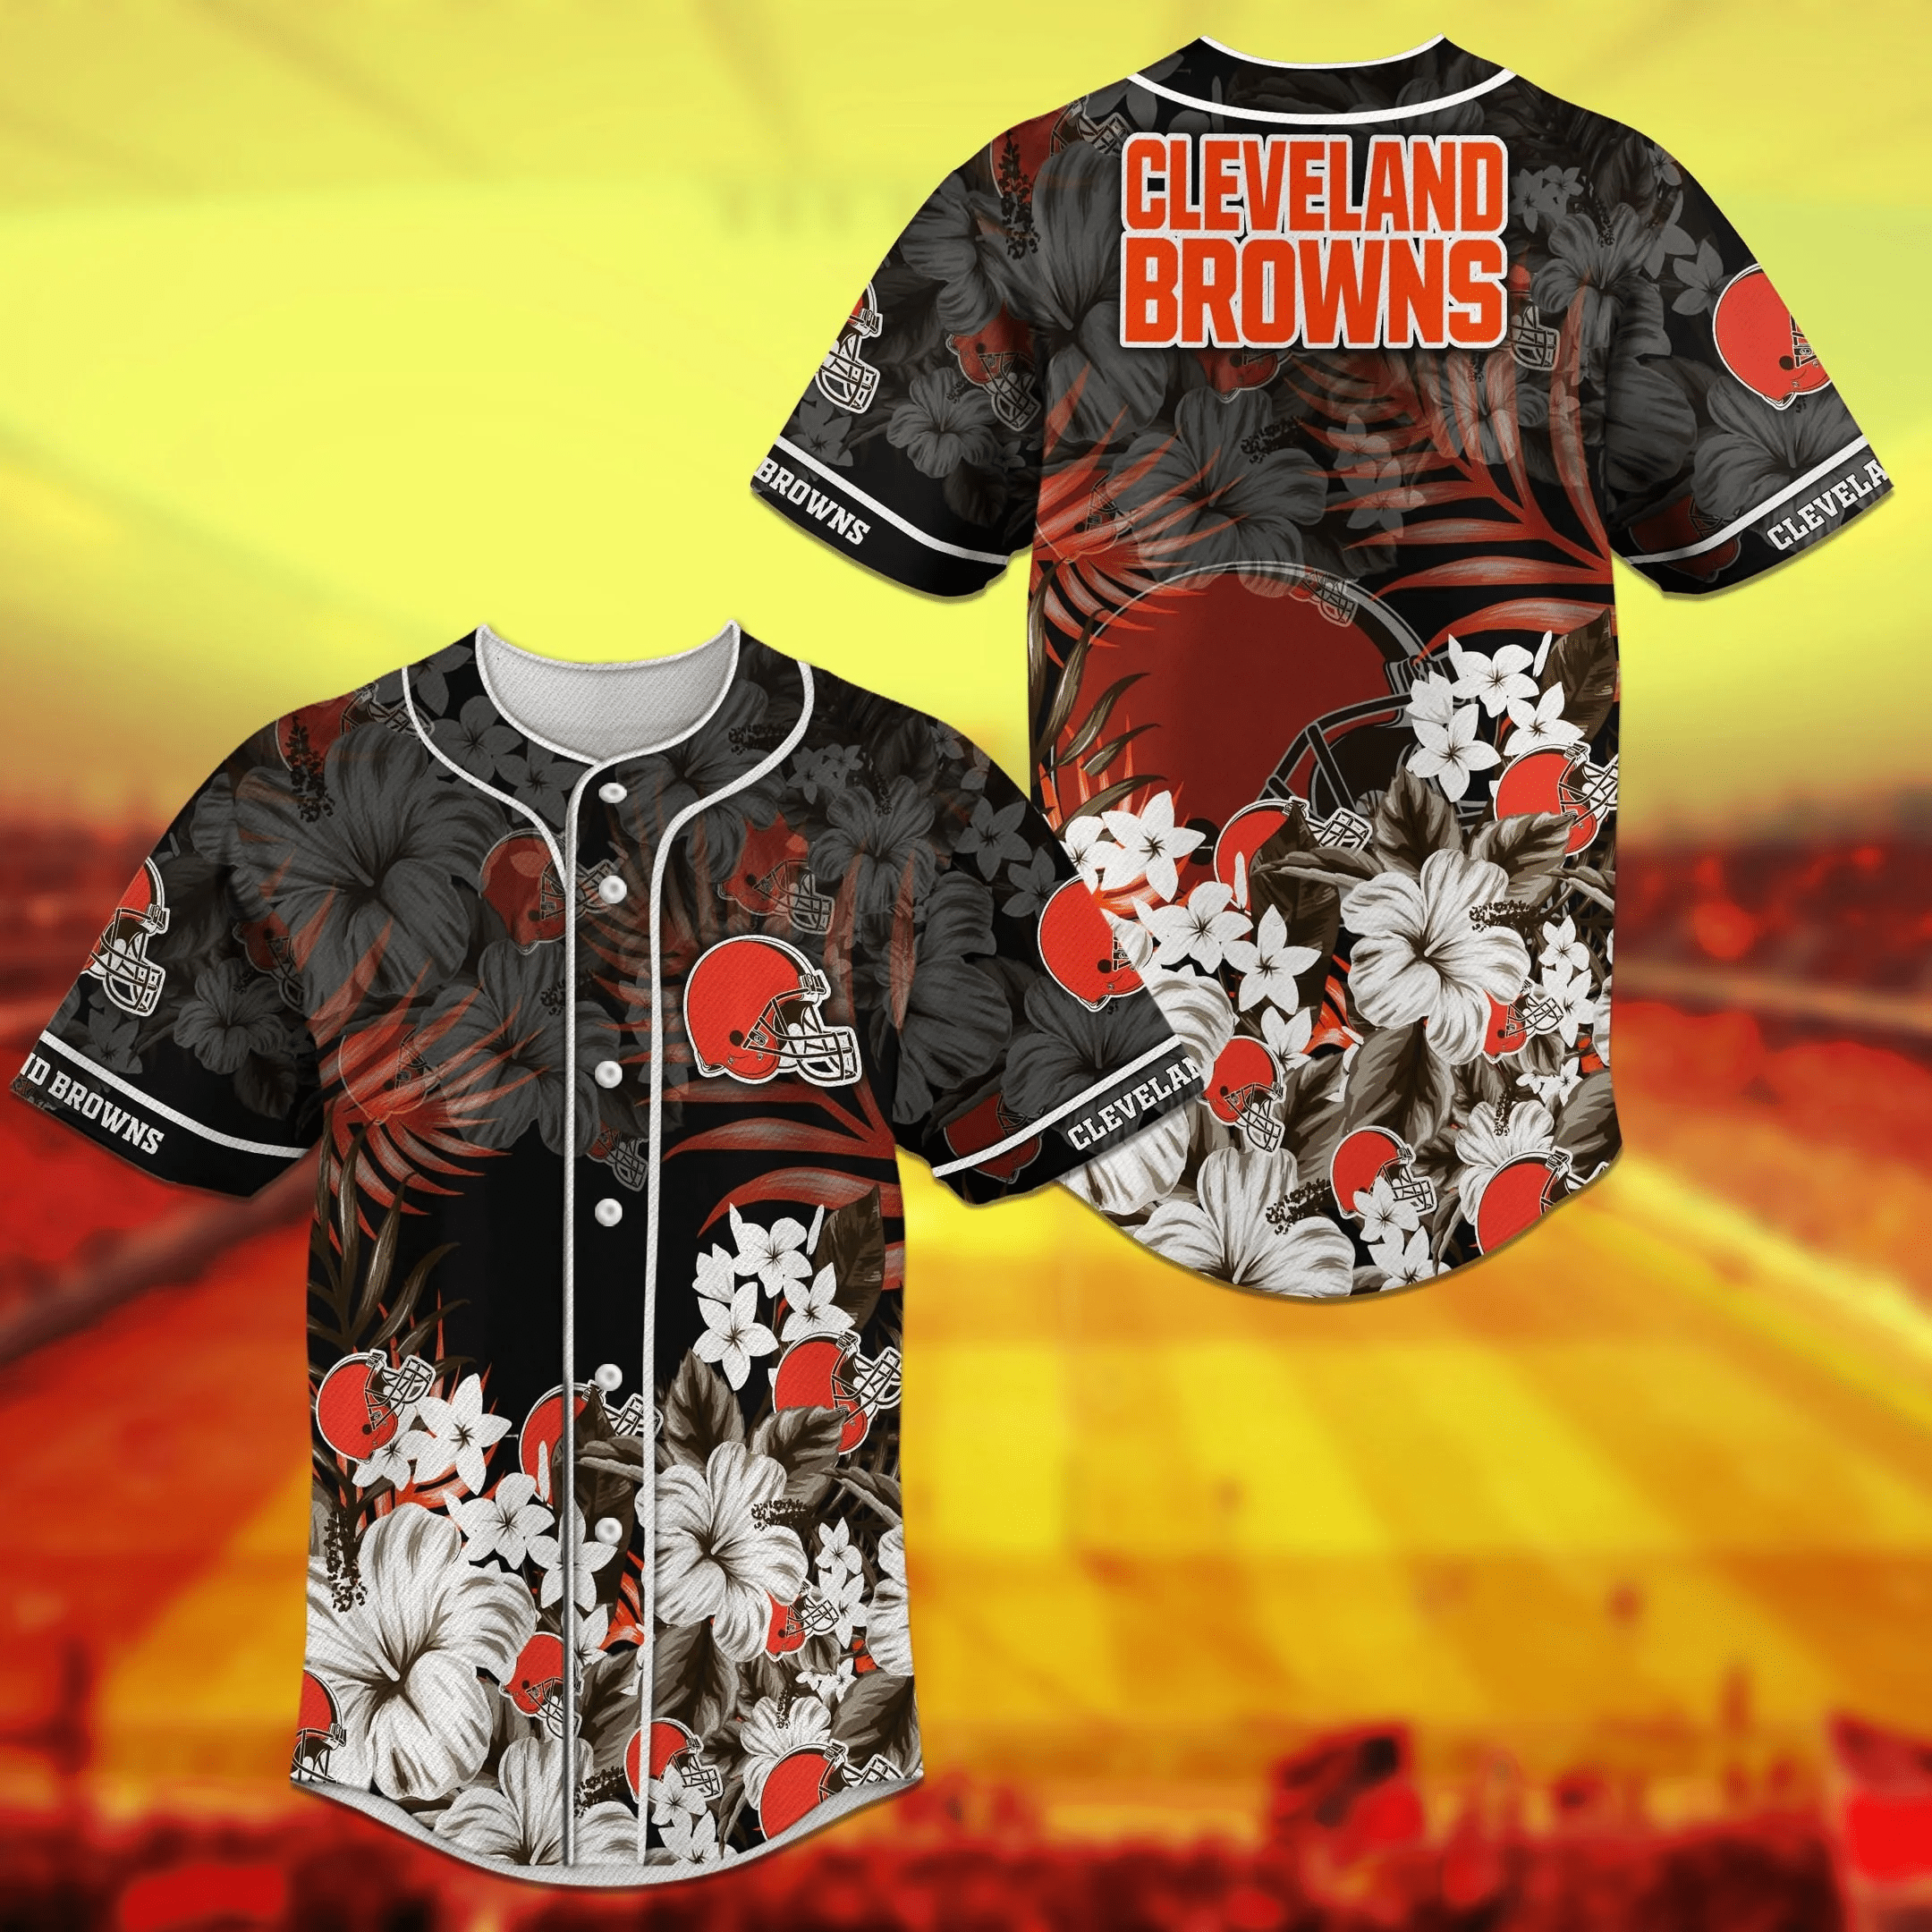 Cleveland Browns NFL Baseball Jersey Shirt